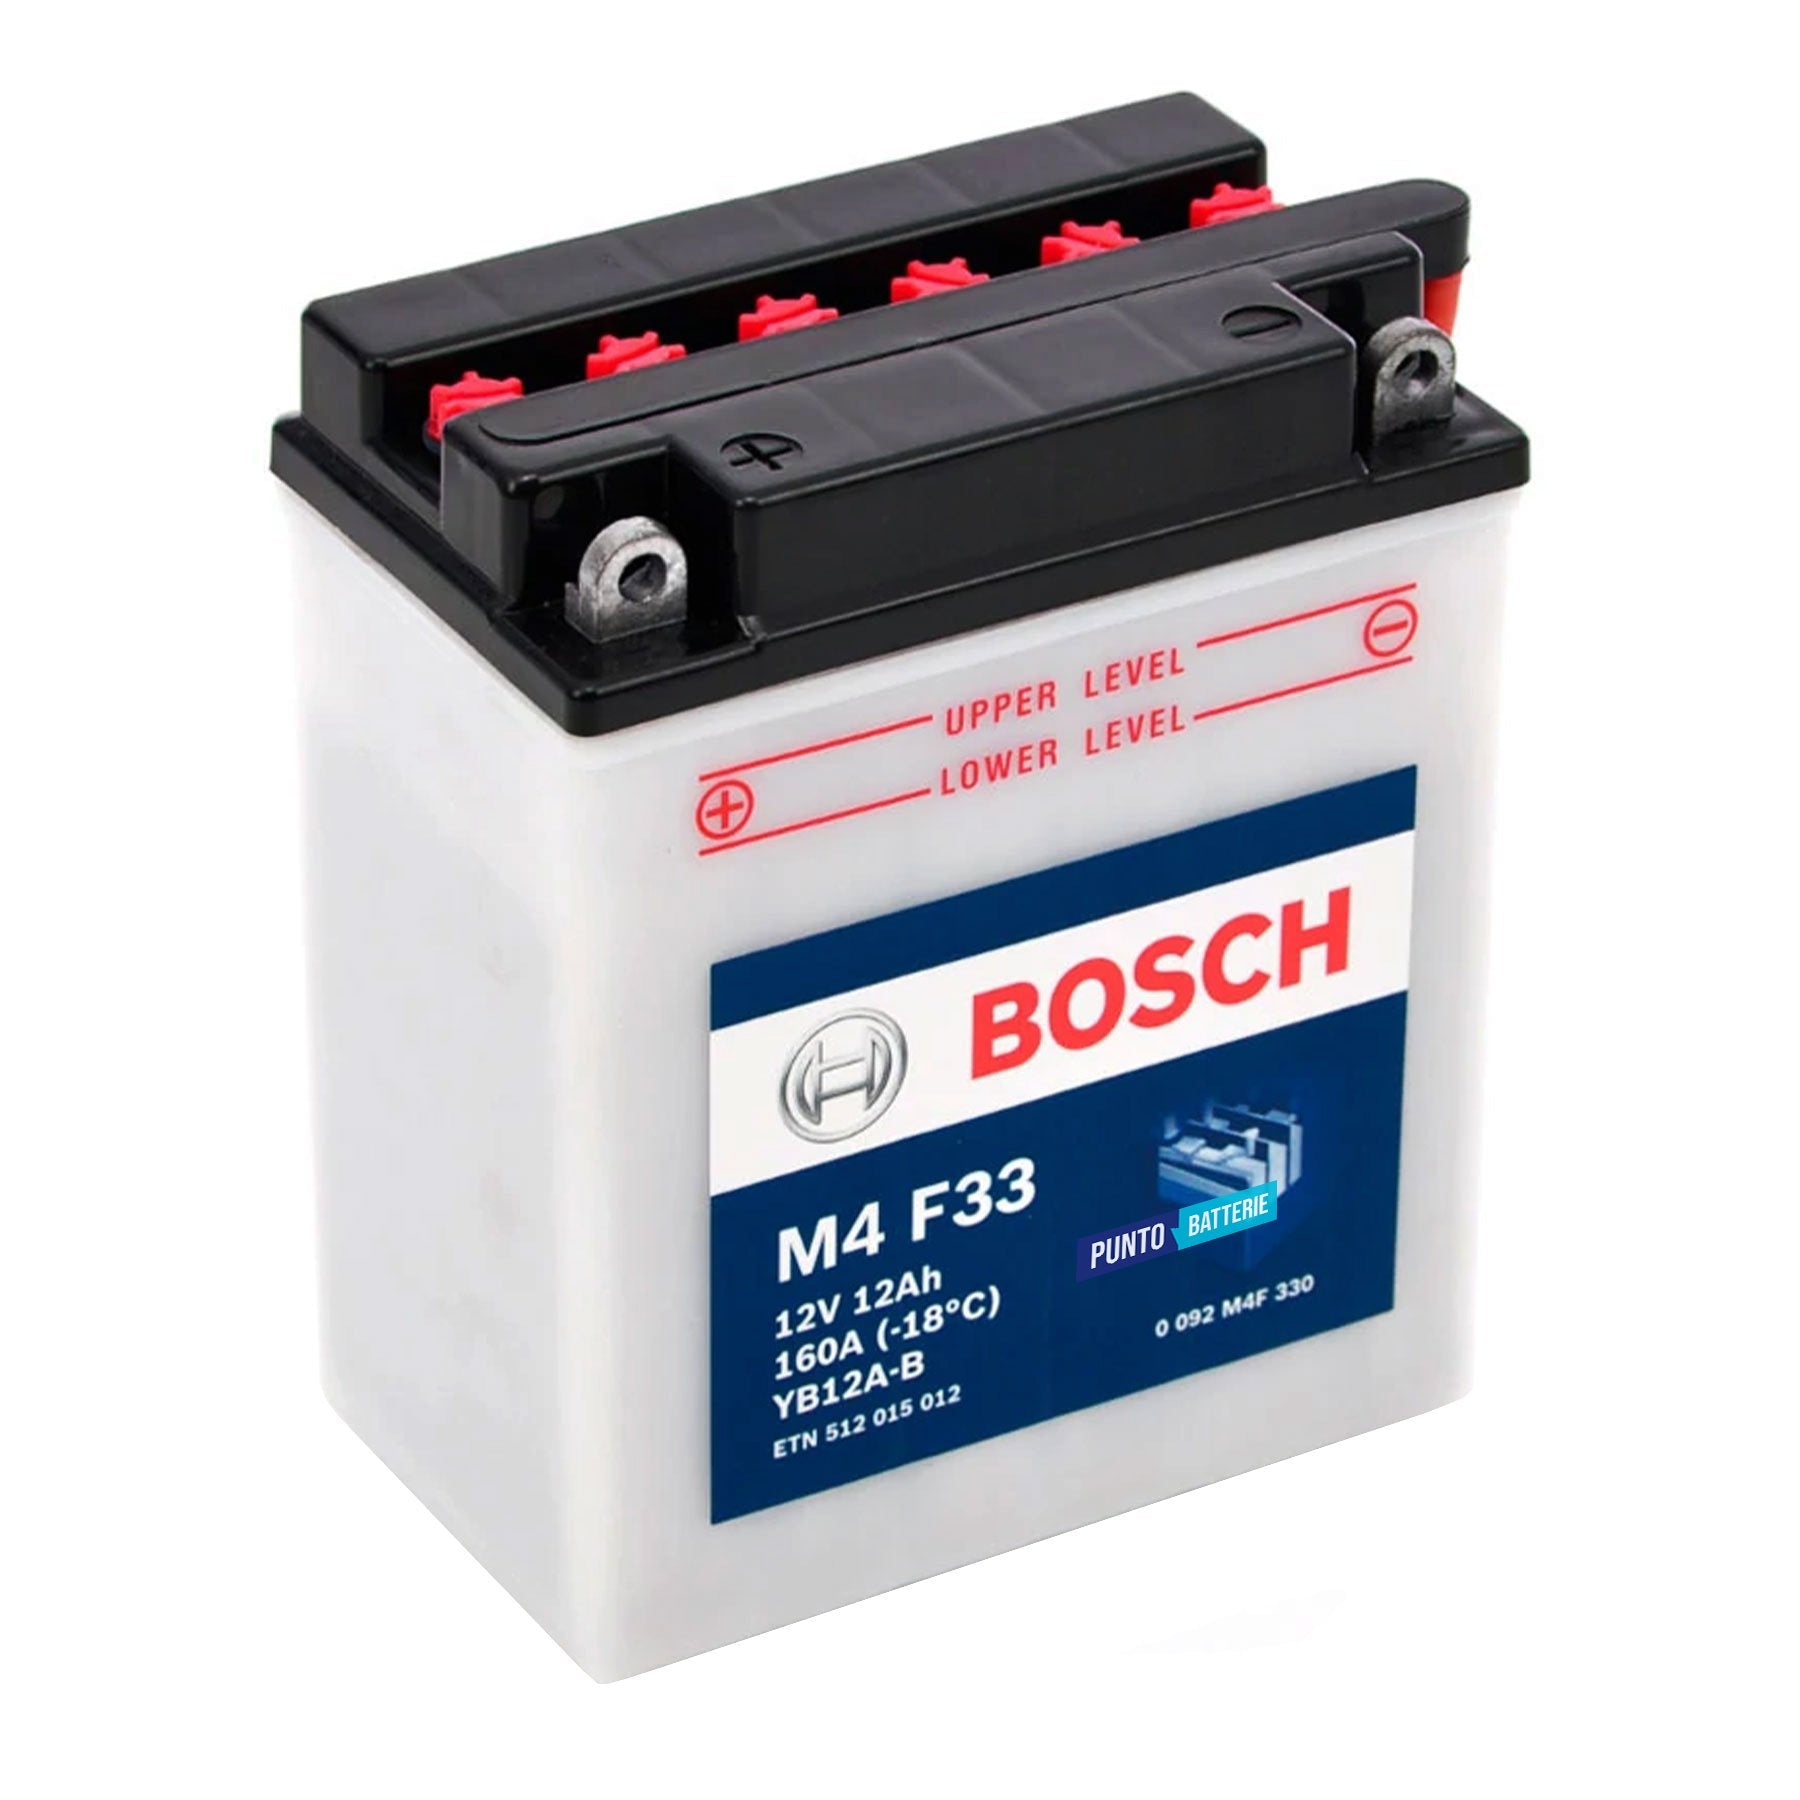 Batteria originale Bosch M4 M4F33, dimensioni 135 x 75 x 133, polo positivo a sinistra, 12 volt, 12 amperora, 160 ampere. Batteria per moto, scooter e powersport.